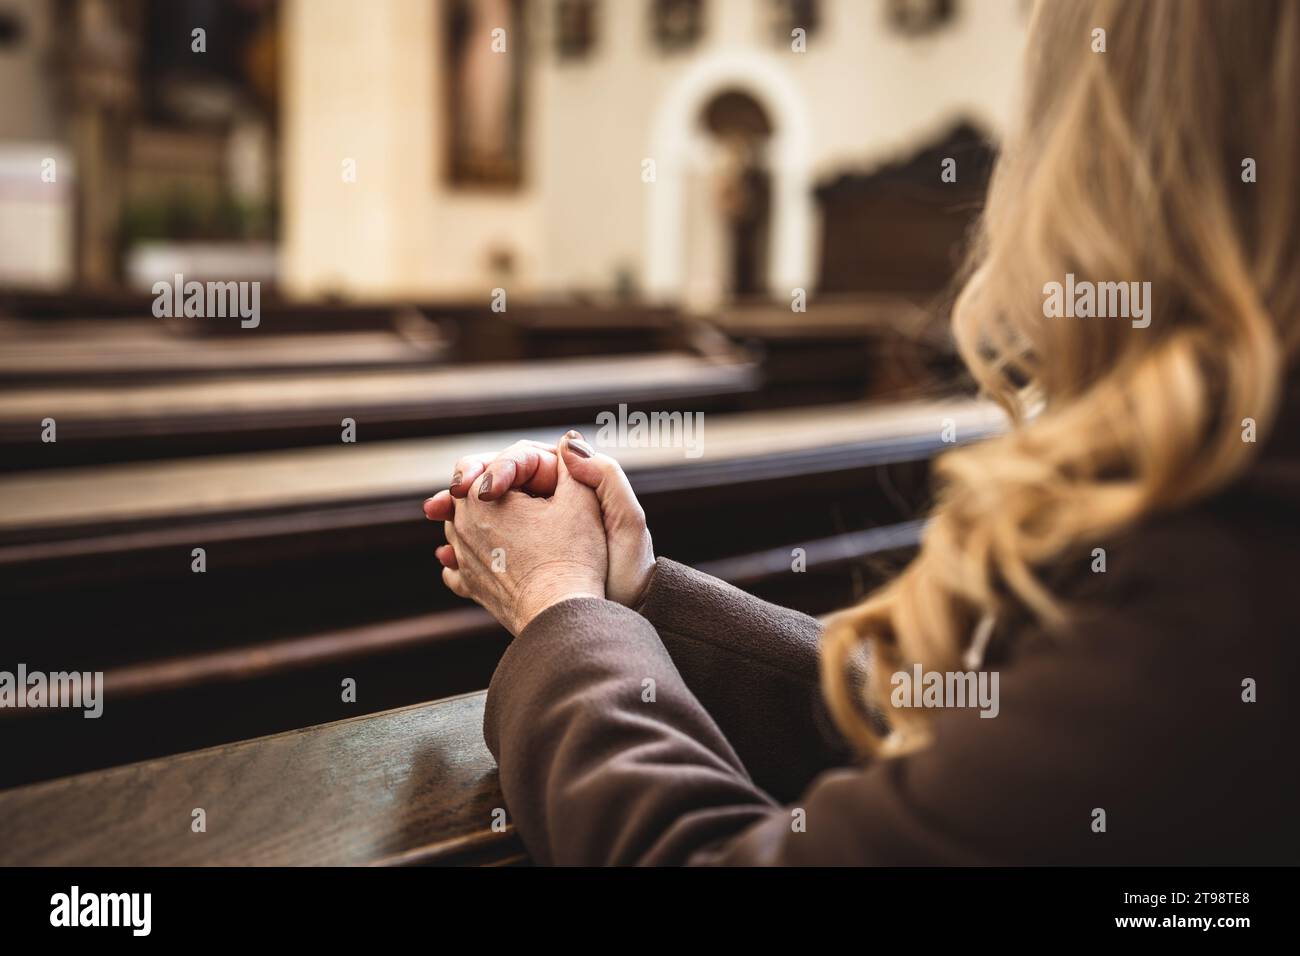 Femme chrétienne avec les mains pliées dans la prière assise sur l'église pew. Religion et spiritualité concept. La personne féminine prie Dieu Banque D'Images